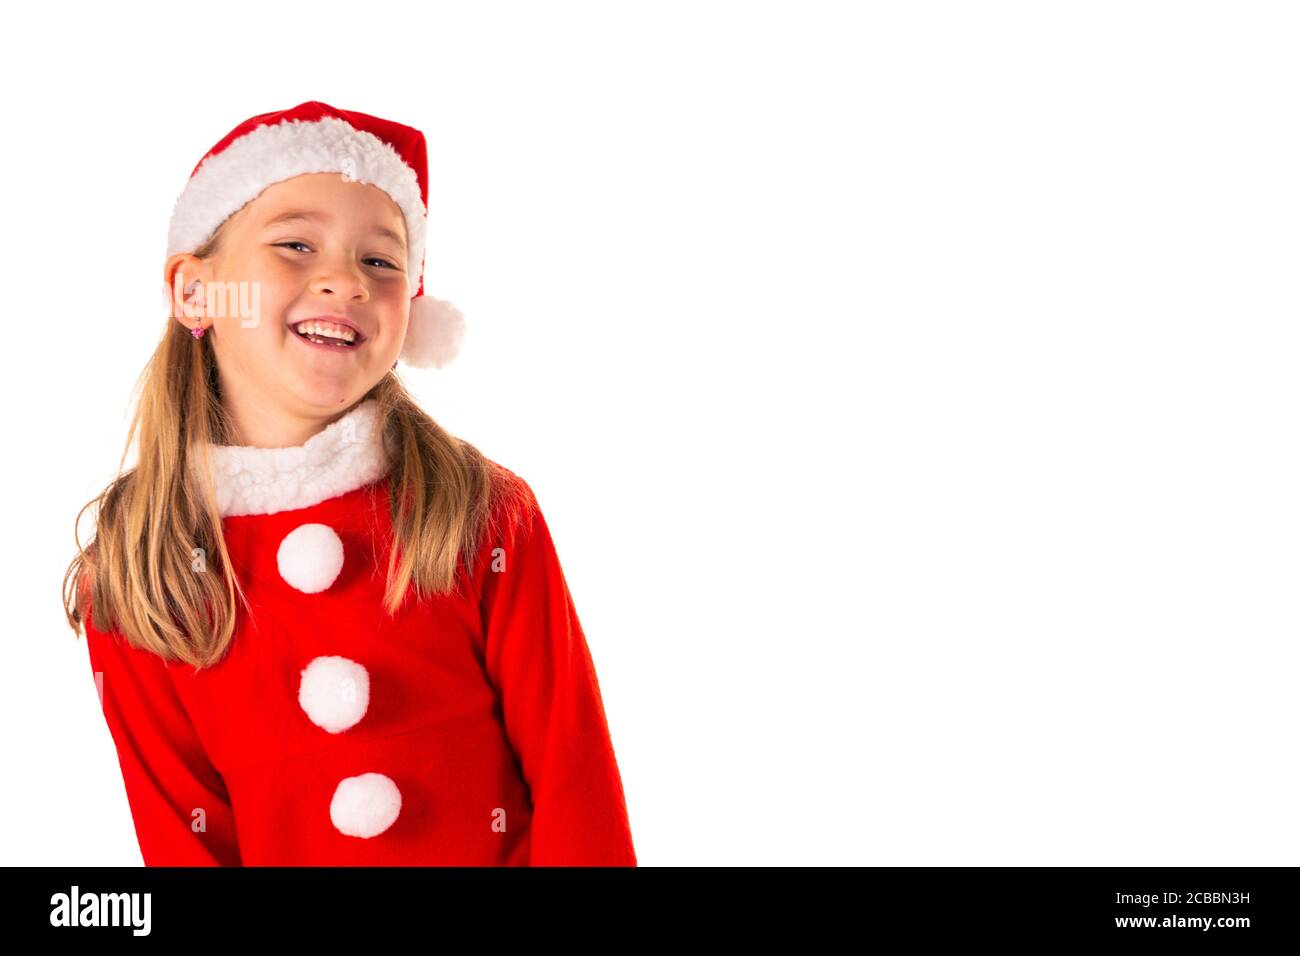 Portrait der schönen fröhlichen 8 Jahre altes Mädchen lächelnd und Tragen rote weihnachtskostüm mit rotem Kleid und einem Weihnachtsmann Claus Hut isoliert auf weiß Stockfoto